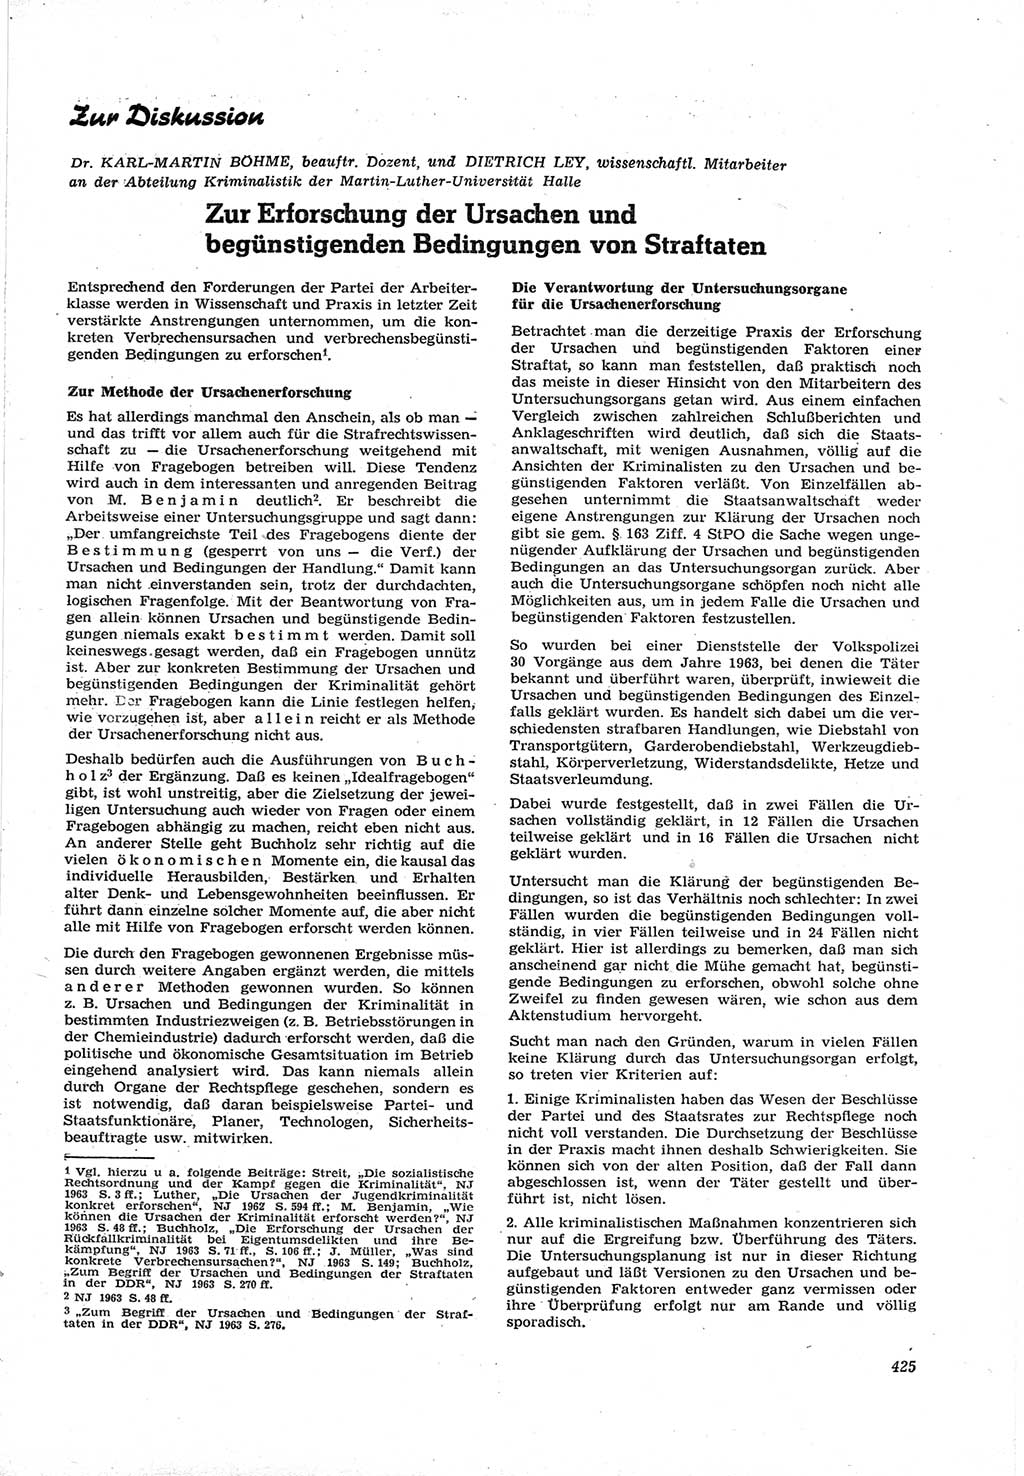 Neue Justiz (NJ), Zeitschrift für Recht und Rechtswissenschaft [Deutsche Demokratische Republik (DDR)], 17. Jahrgang 1963, Seite 425 (NJ DDR 1963, S. 425)